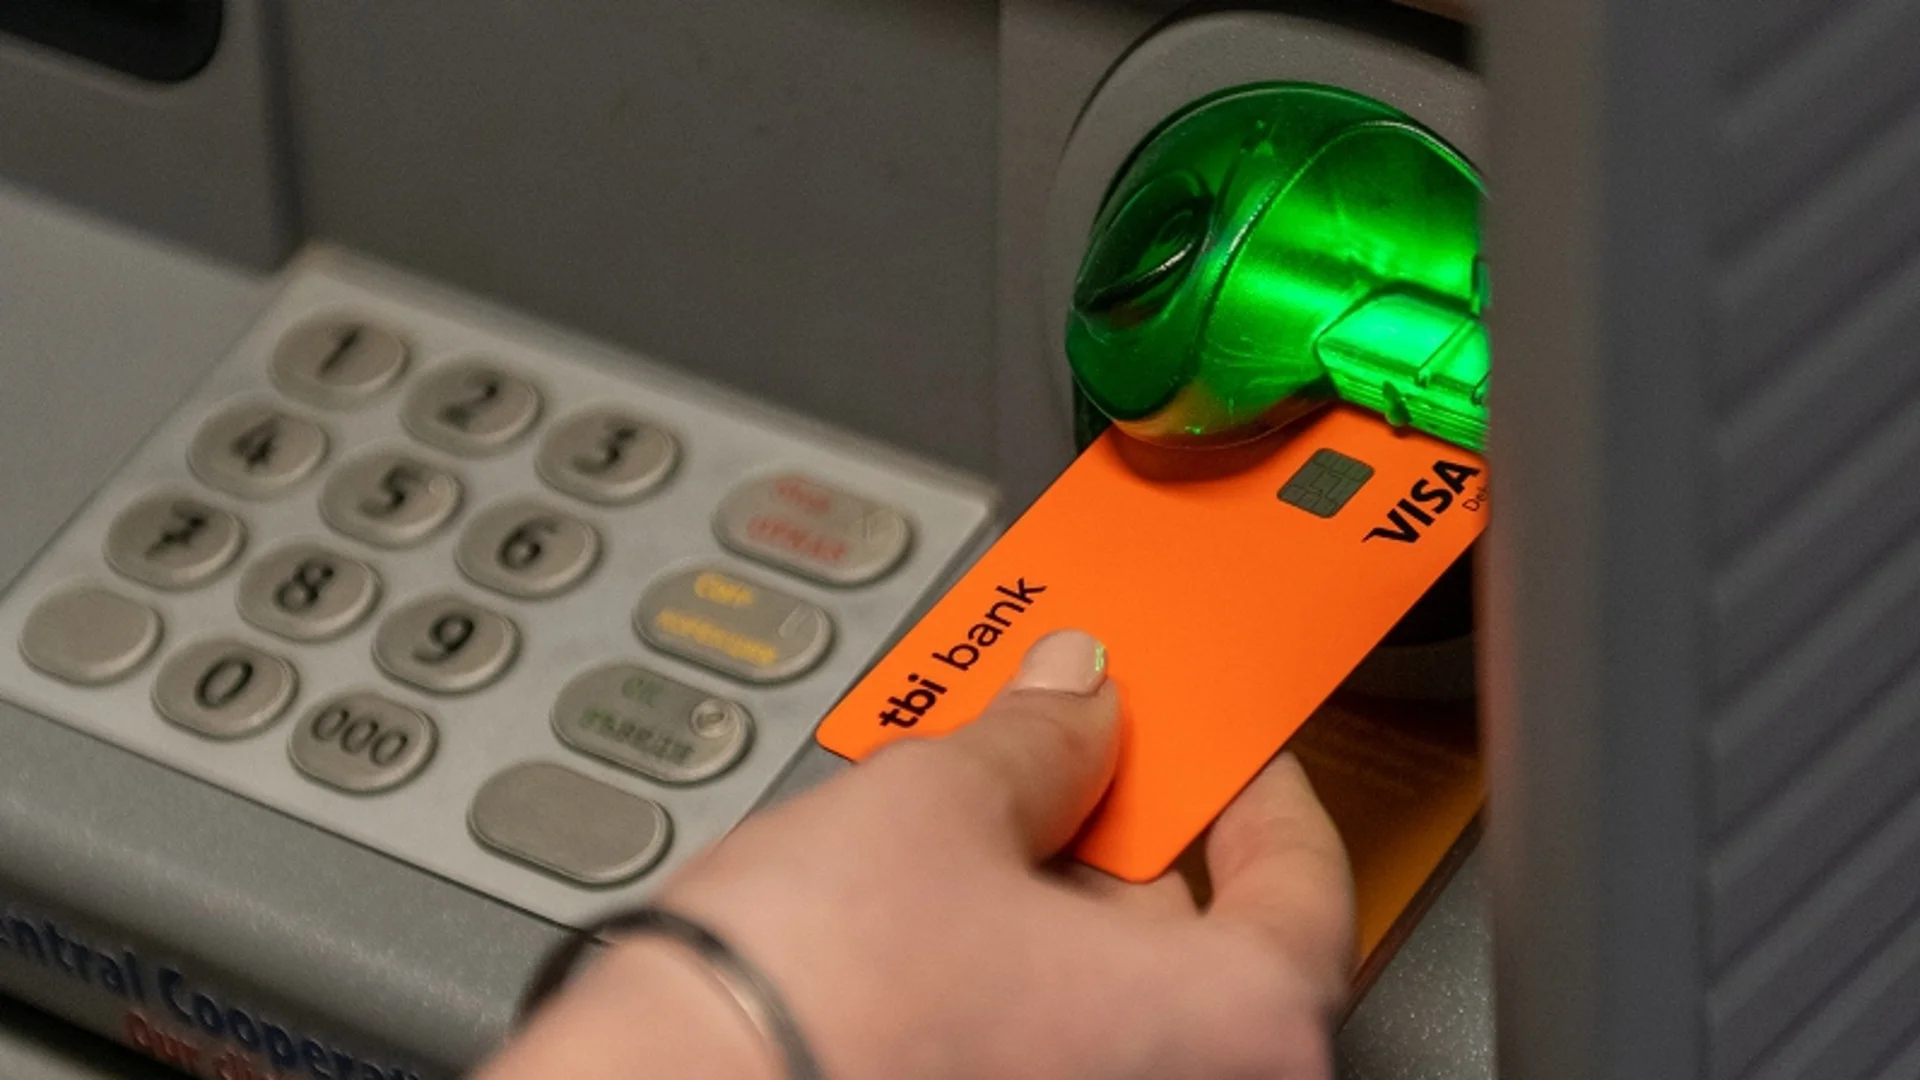 tbi bank добавя към карта neon опция за теглене в брой от шопинг лимита